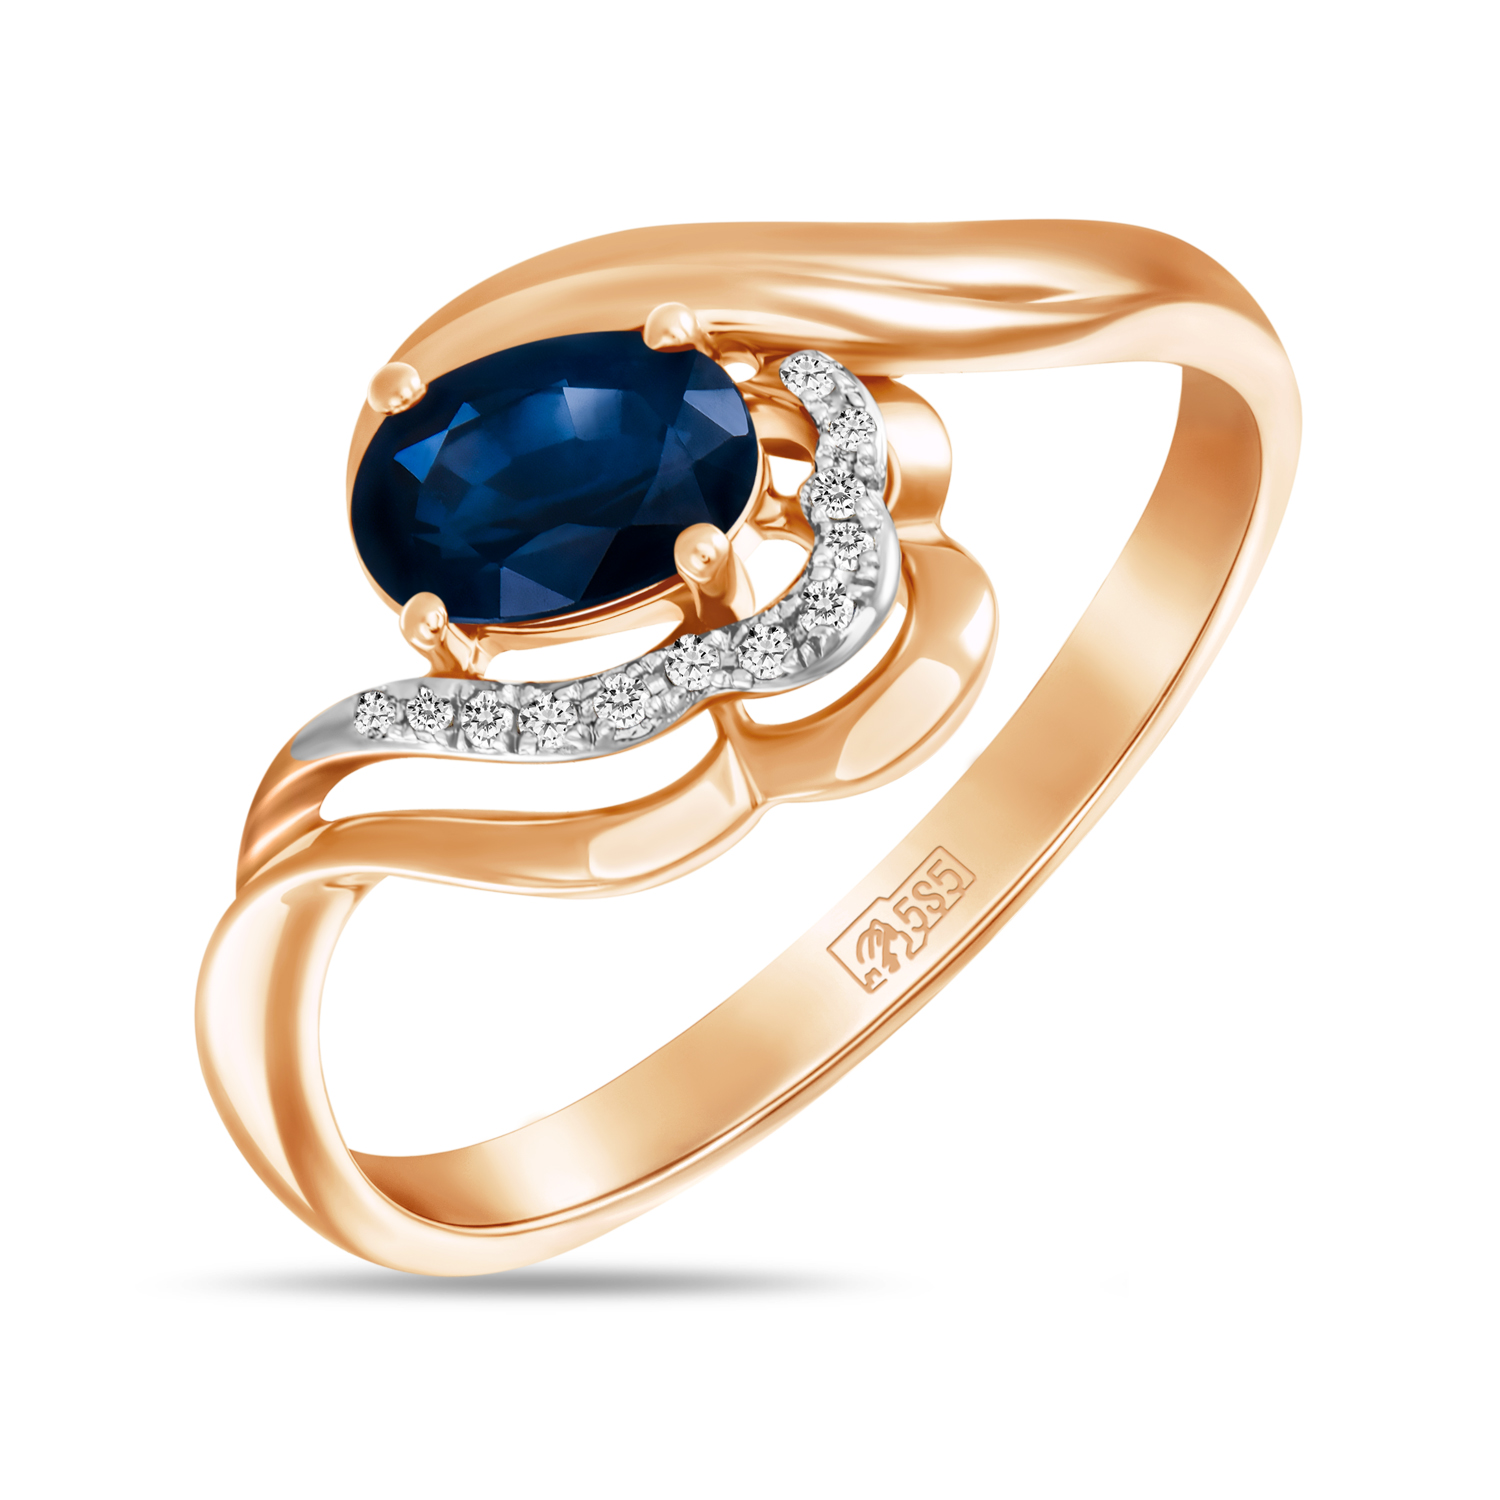 Кольца МЮЗ Золотое кольцо с бриллиантами и сапфиром miuz ru золотое кольцо c бриллиантами и сапфиром